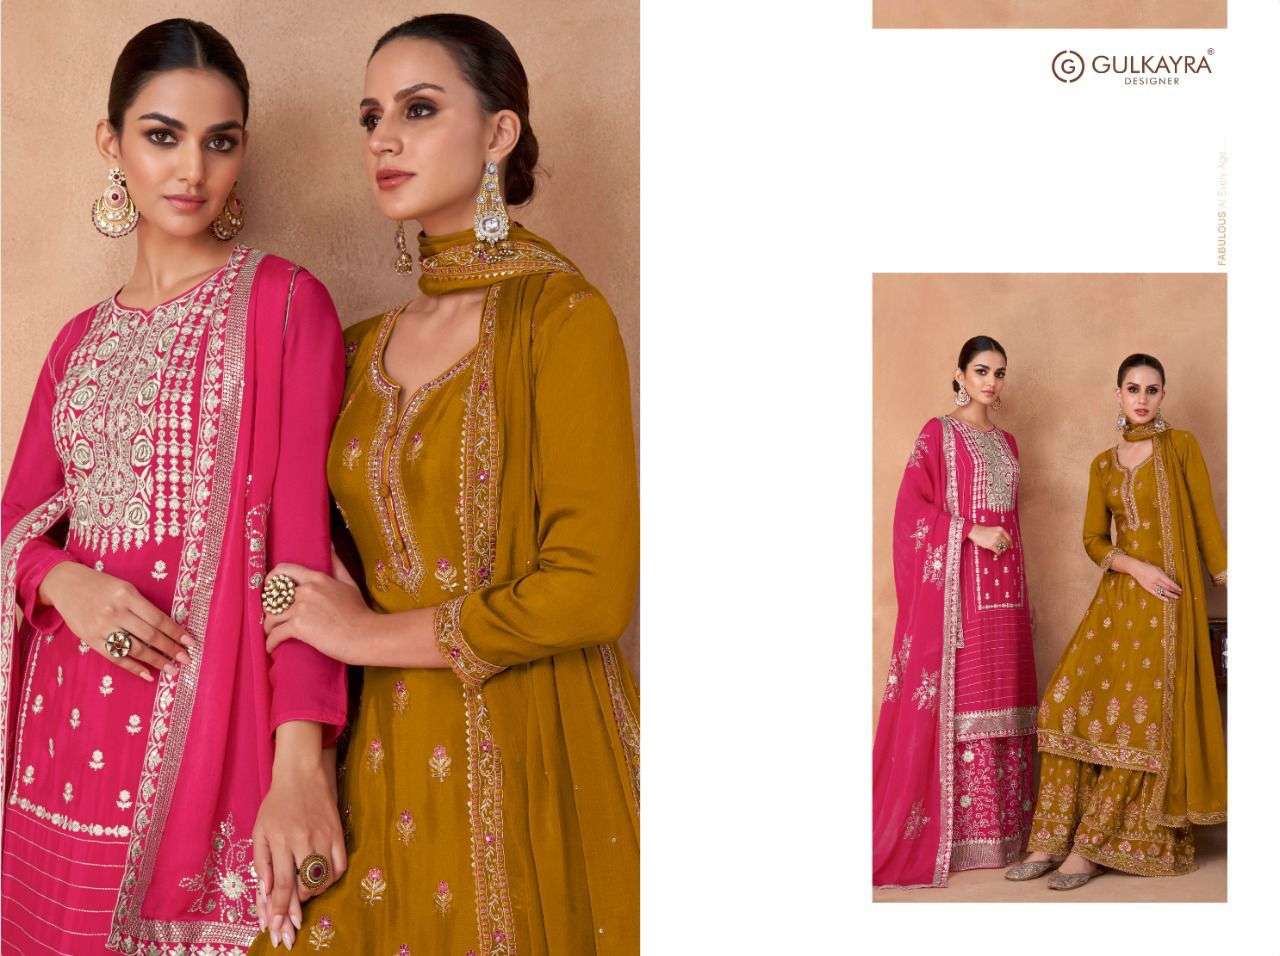 gulkayra designer izhaar 7190-7194 series exclusive designer salwar suits catalogue exporter surat 